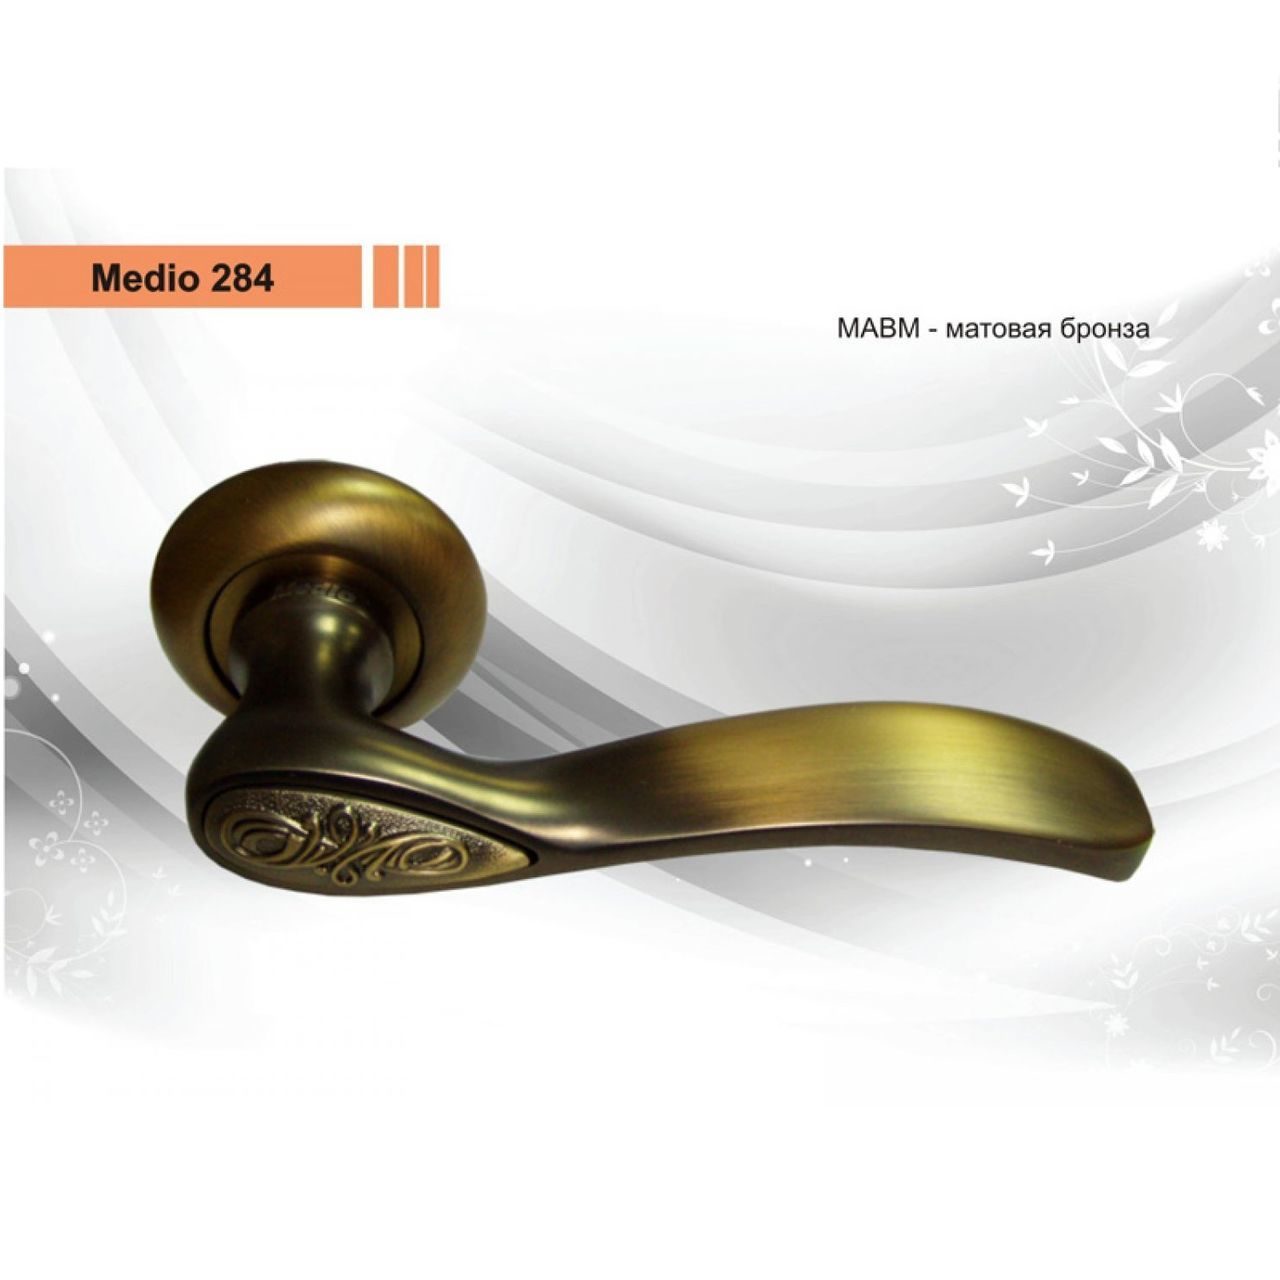 Дверная ручка Медио 284 MABM-K мат.бронза купить в Анапе